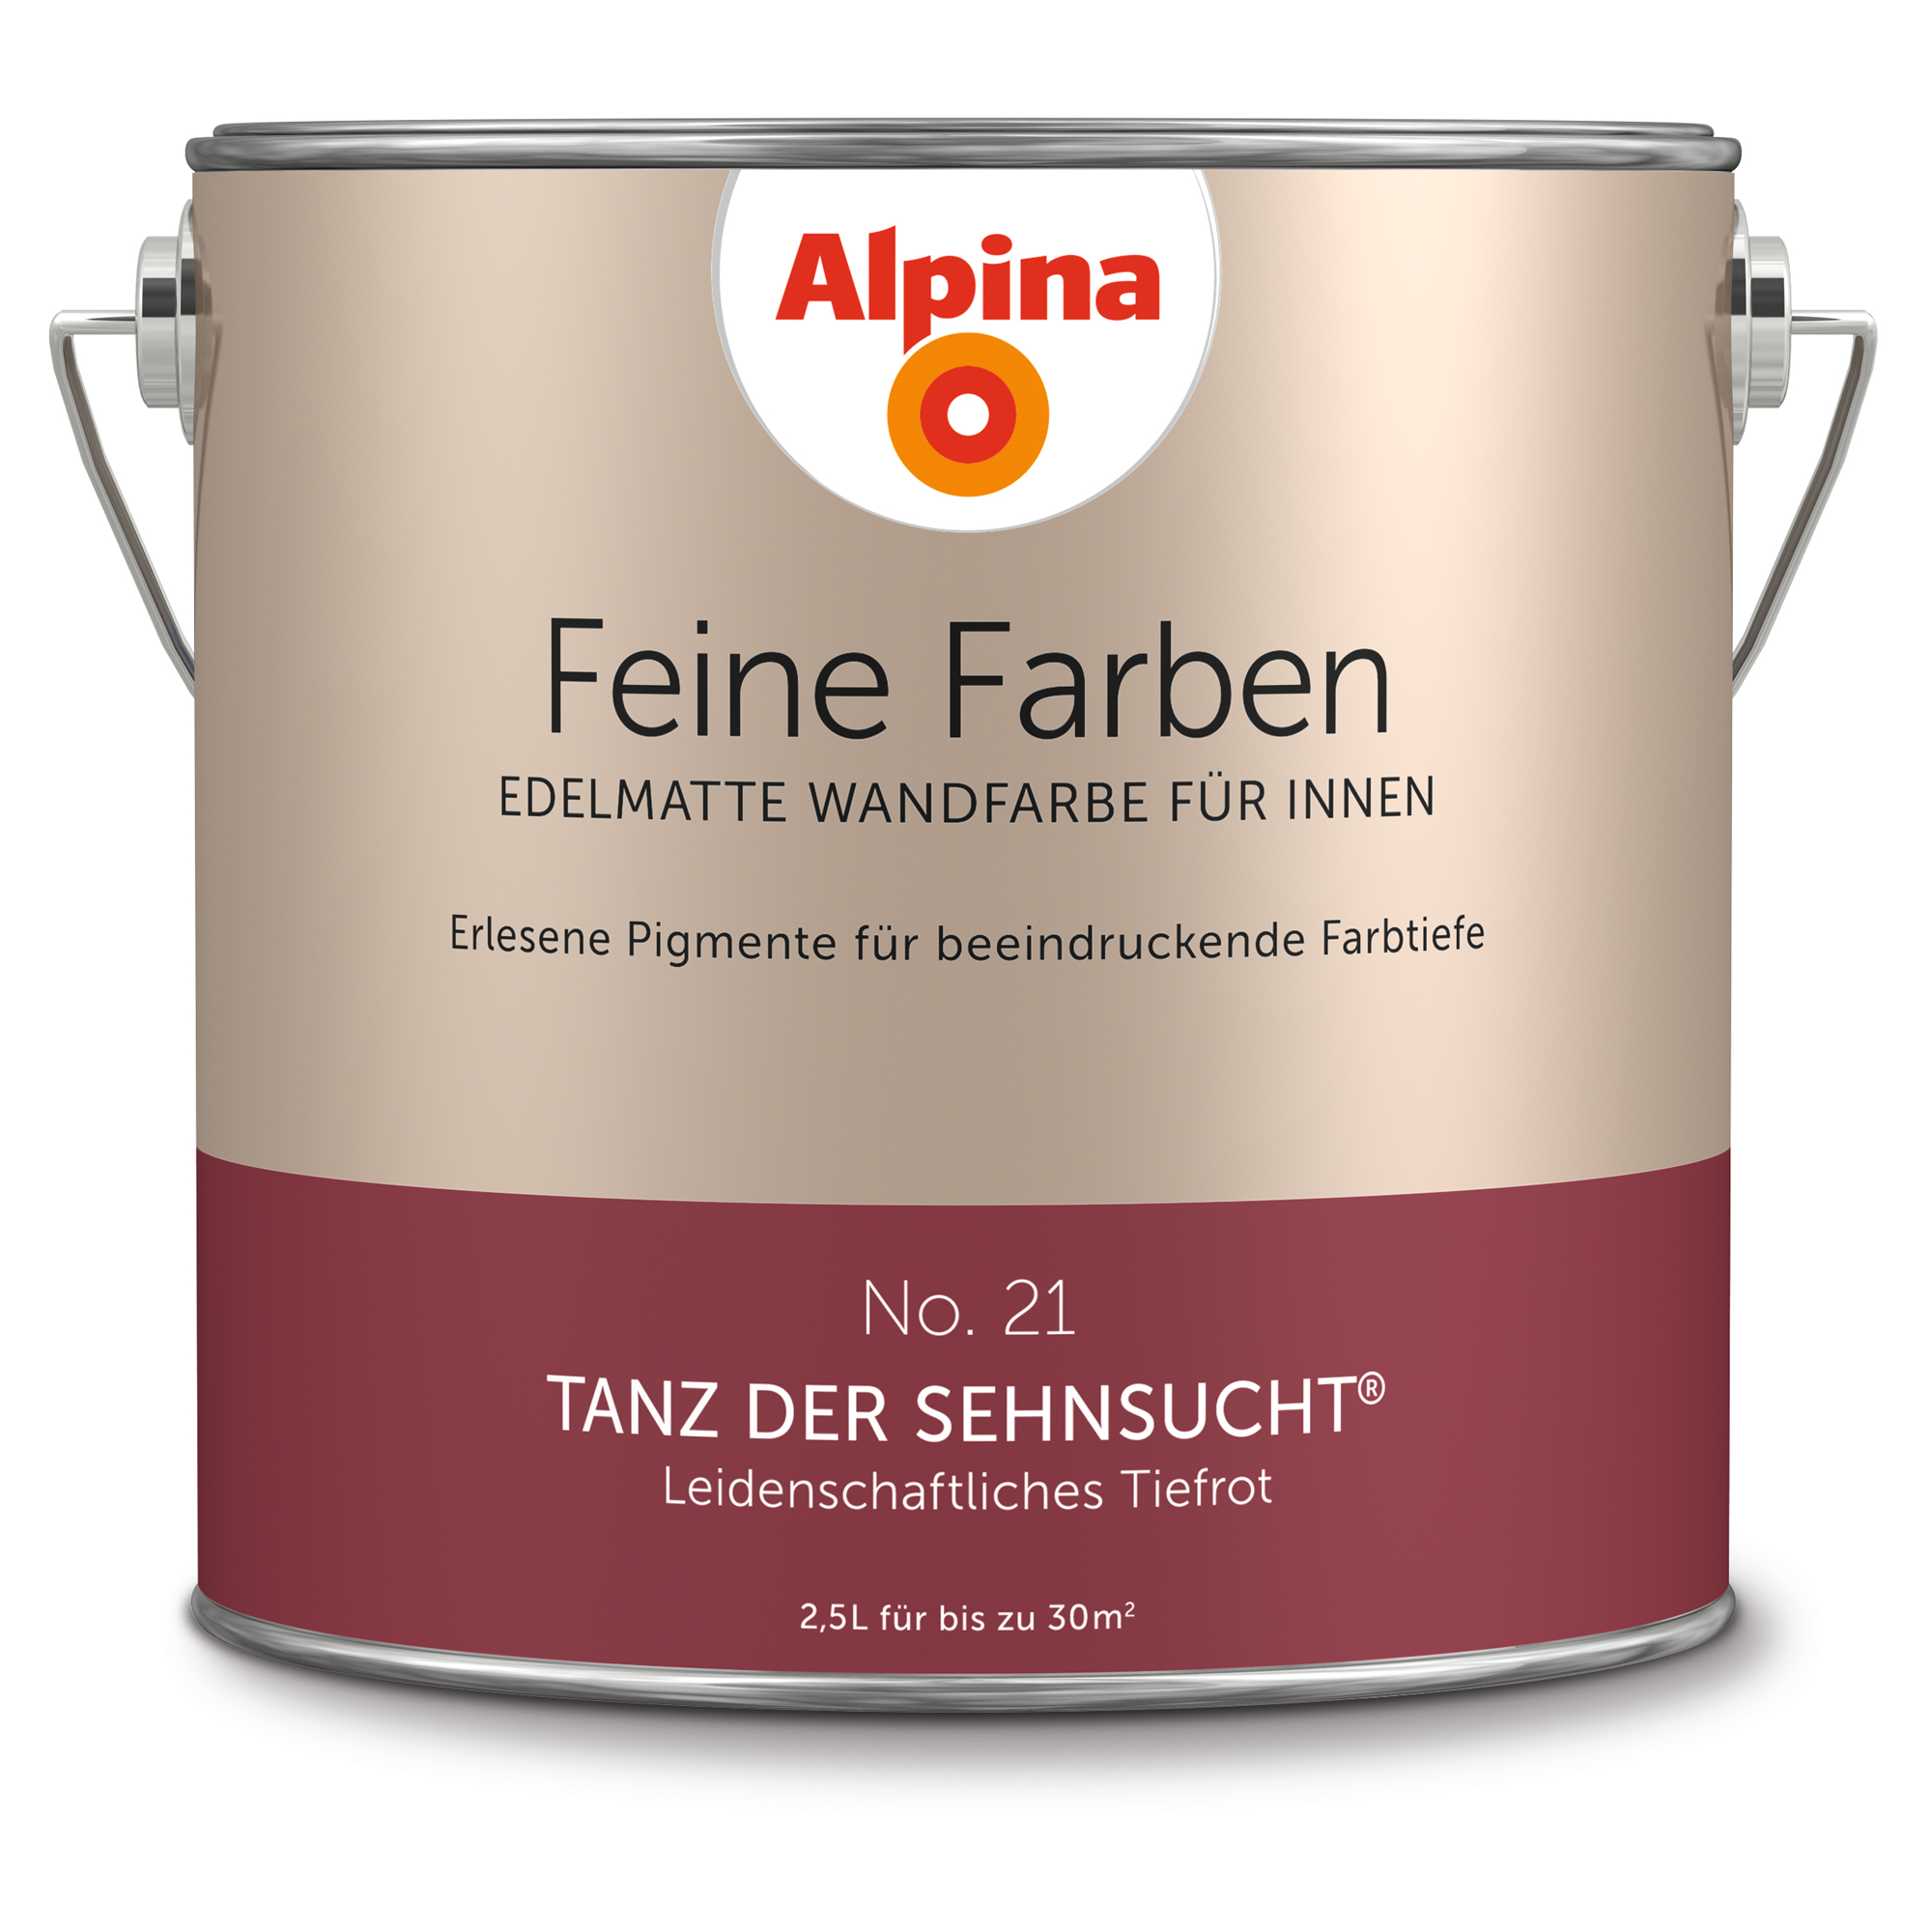 Feine Farben 'Tanz der Sehnsucht' tiefrot matt 2,5 l + product picture